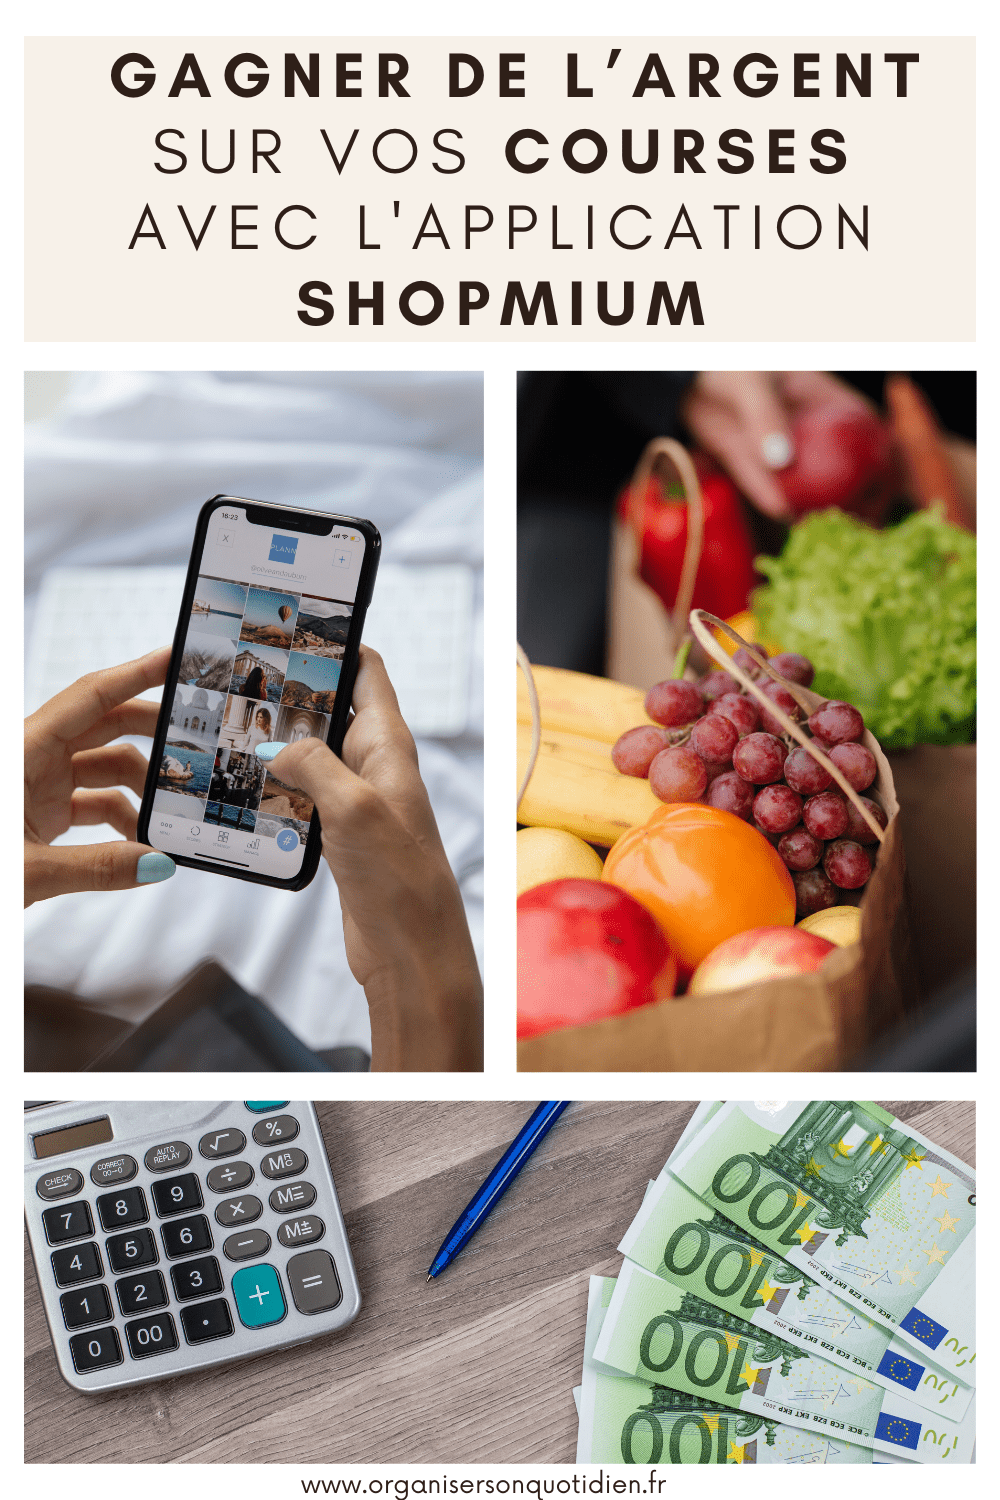  gagner de l’argent sur vos courses avec l'application Shopmium